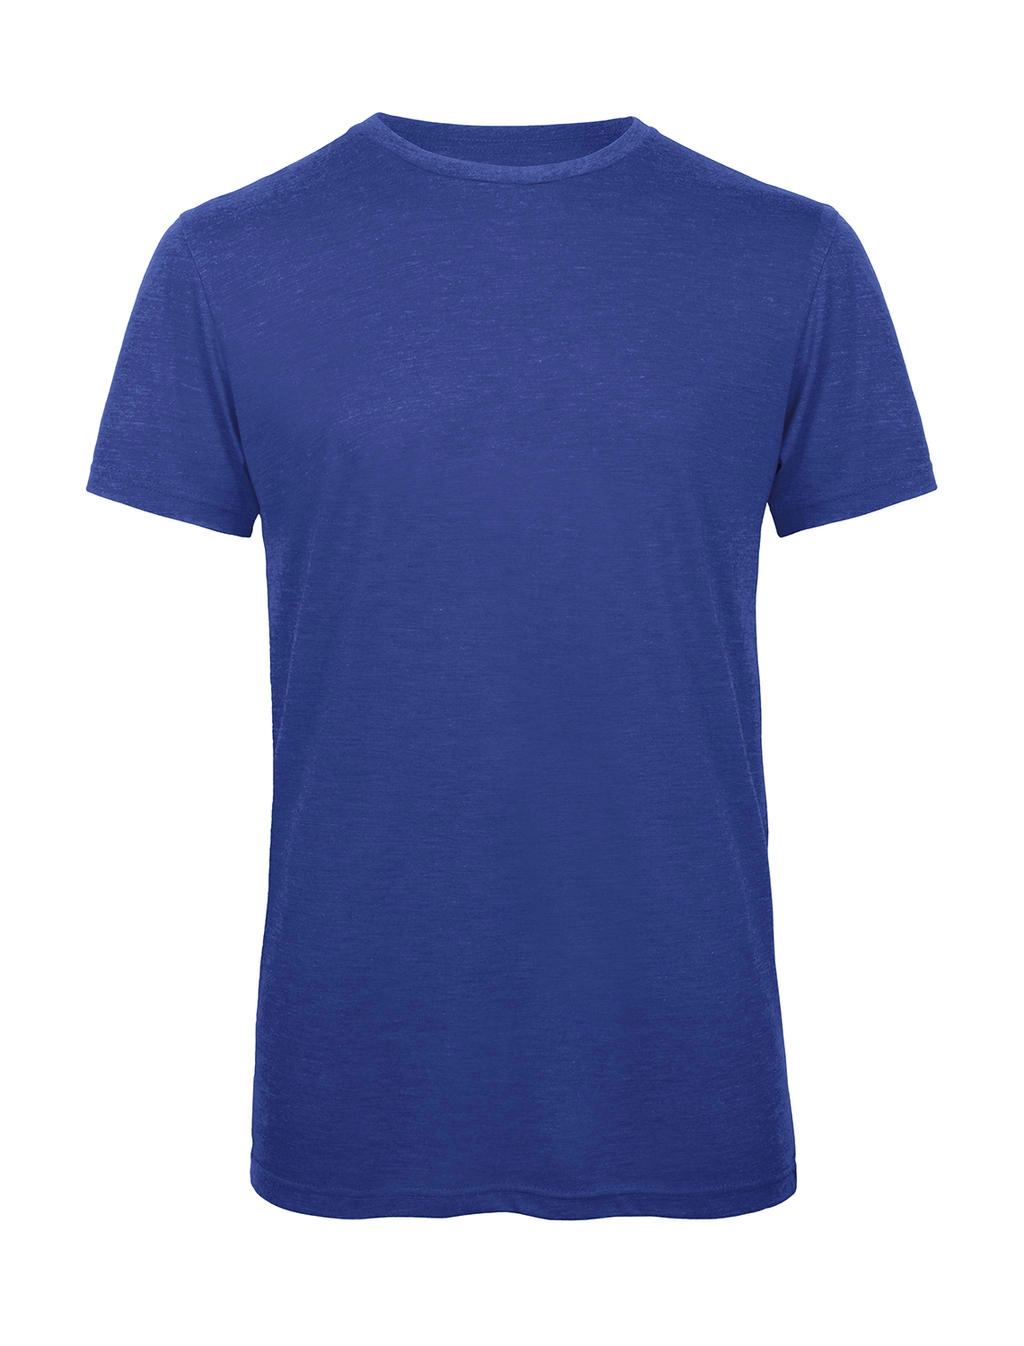 Triblend/men T-Shirt zum Besticken und Bedrucken in der Farbe Heather Royal Blue mit Ihren Logo, Schriftzug oder Motiv.